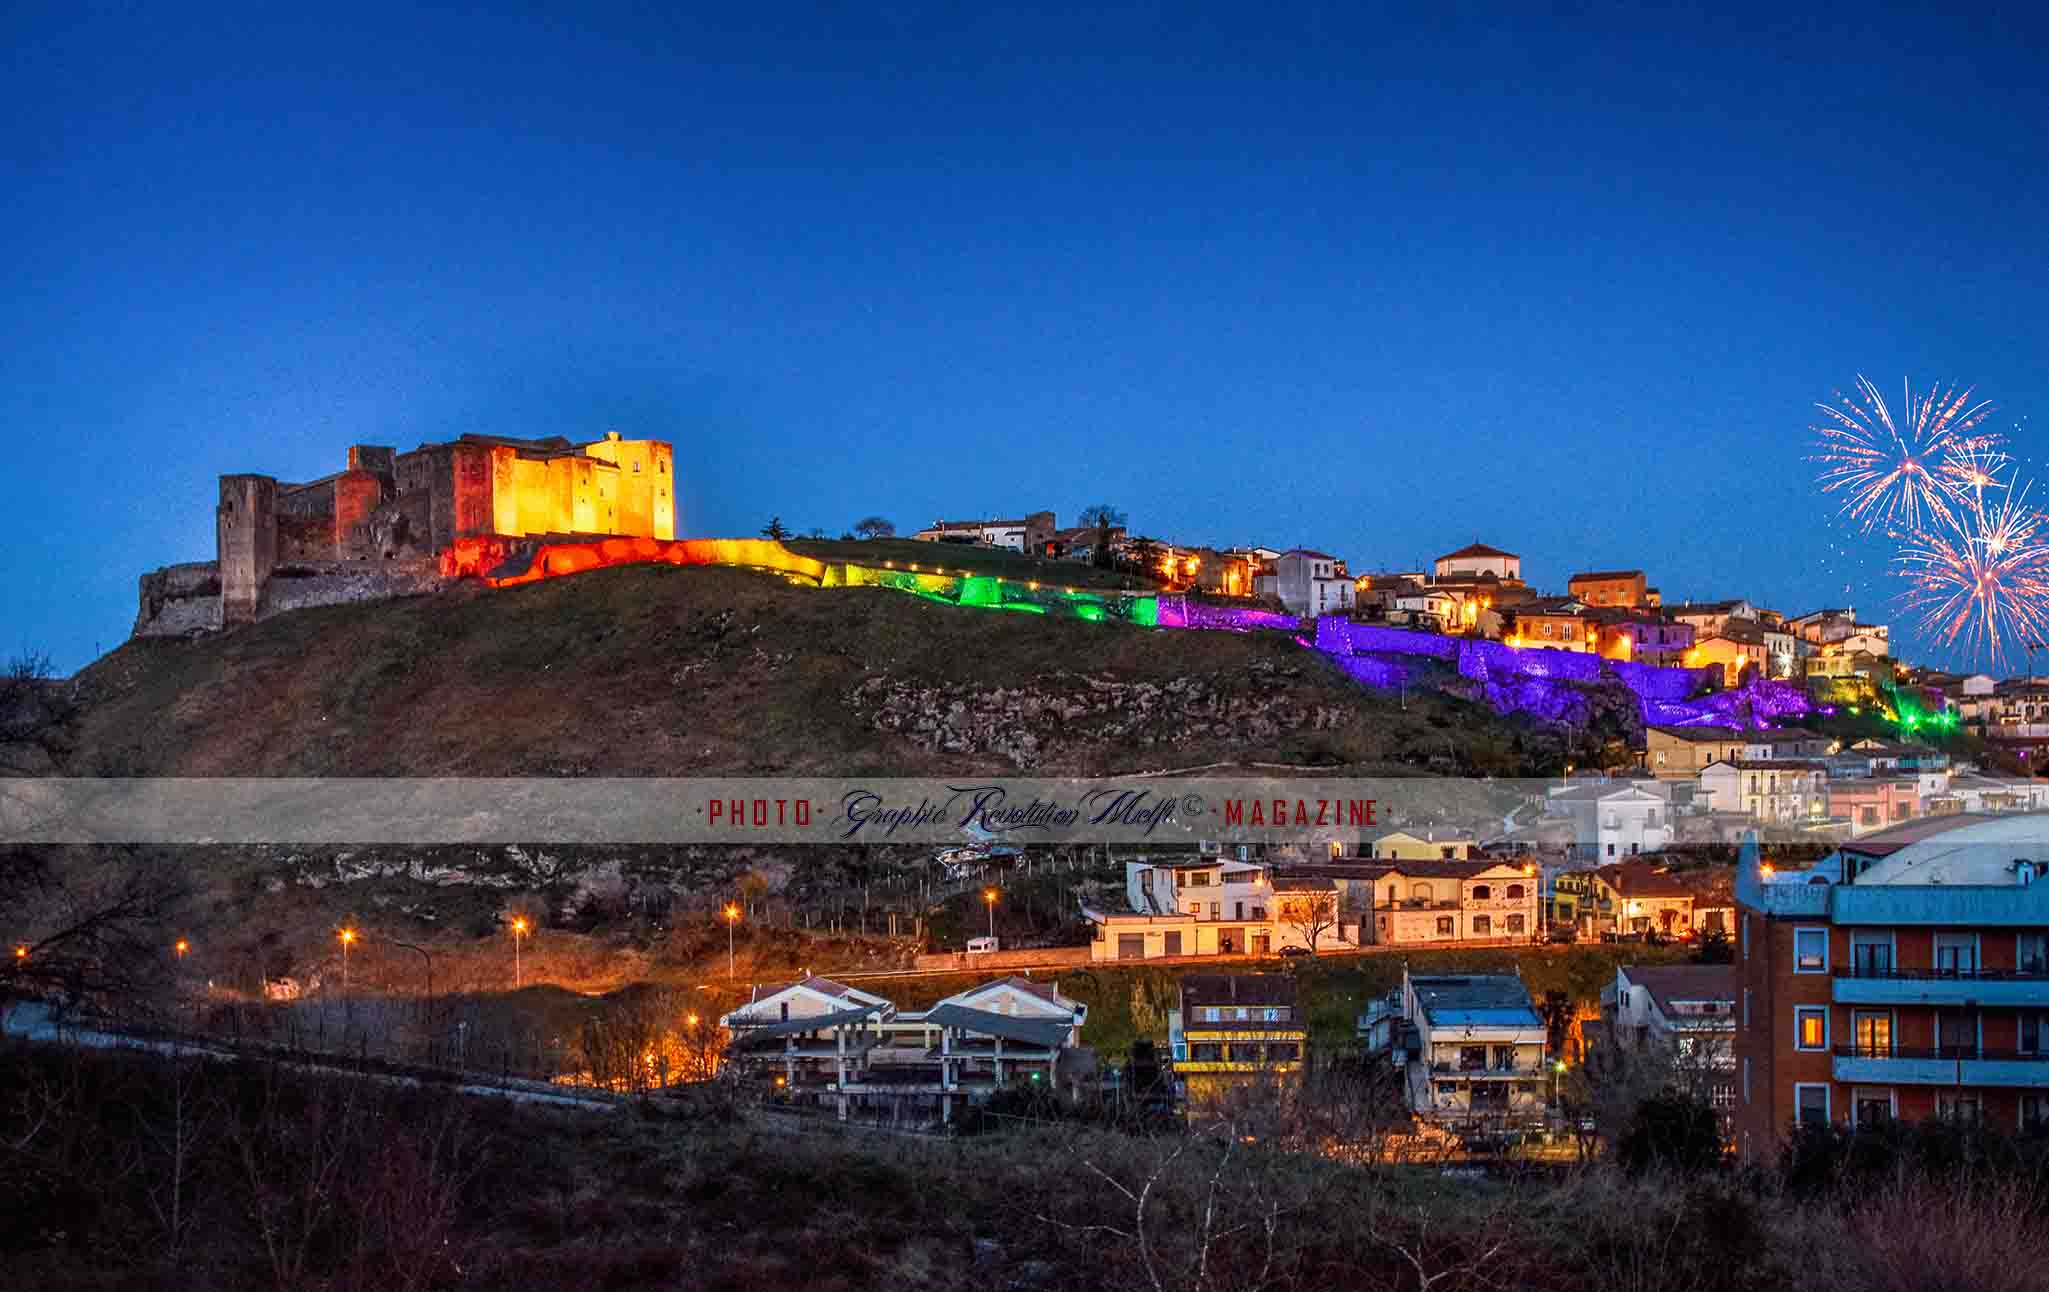 Le foto dei Corteo dei Giganti del Carnevale di Melfi mura millenarie illuminate colorate